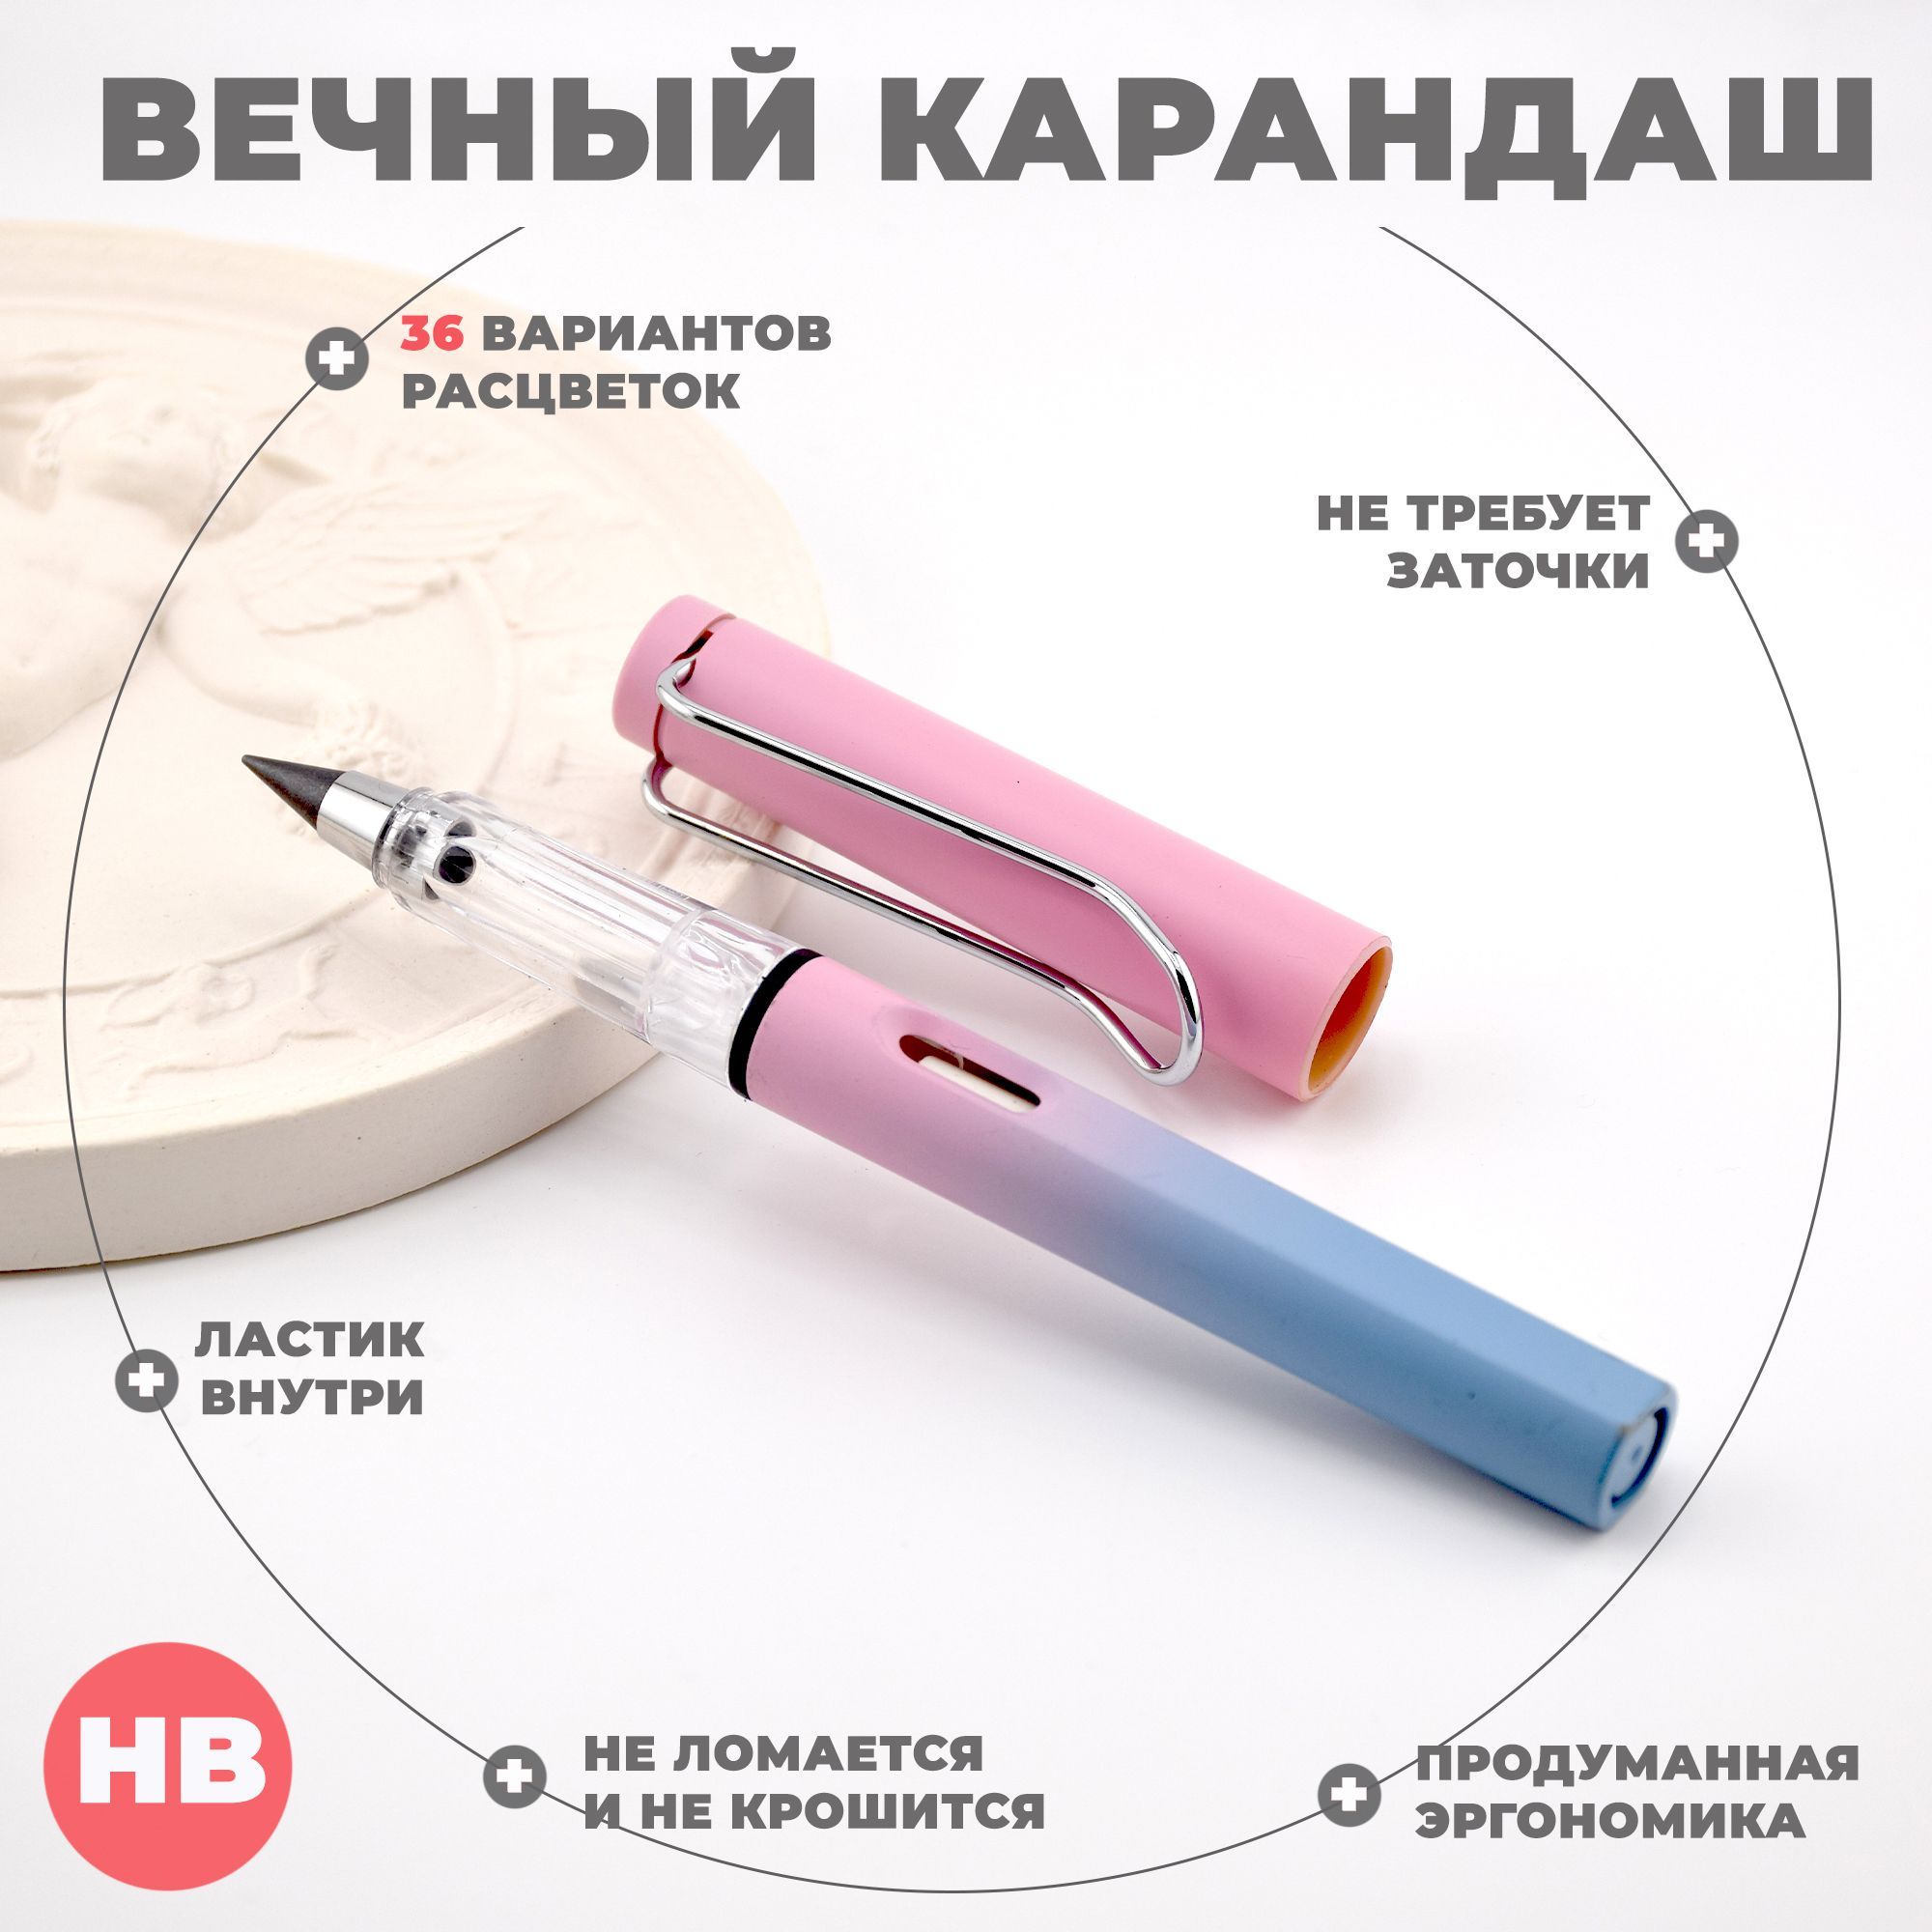 Вечный карандаш Aihao, HB, 0,5 мм, градиент розовый/голубой